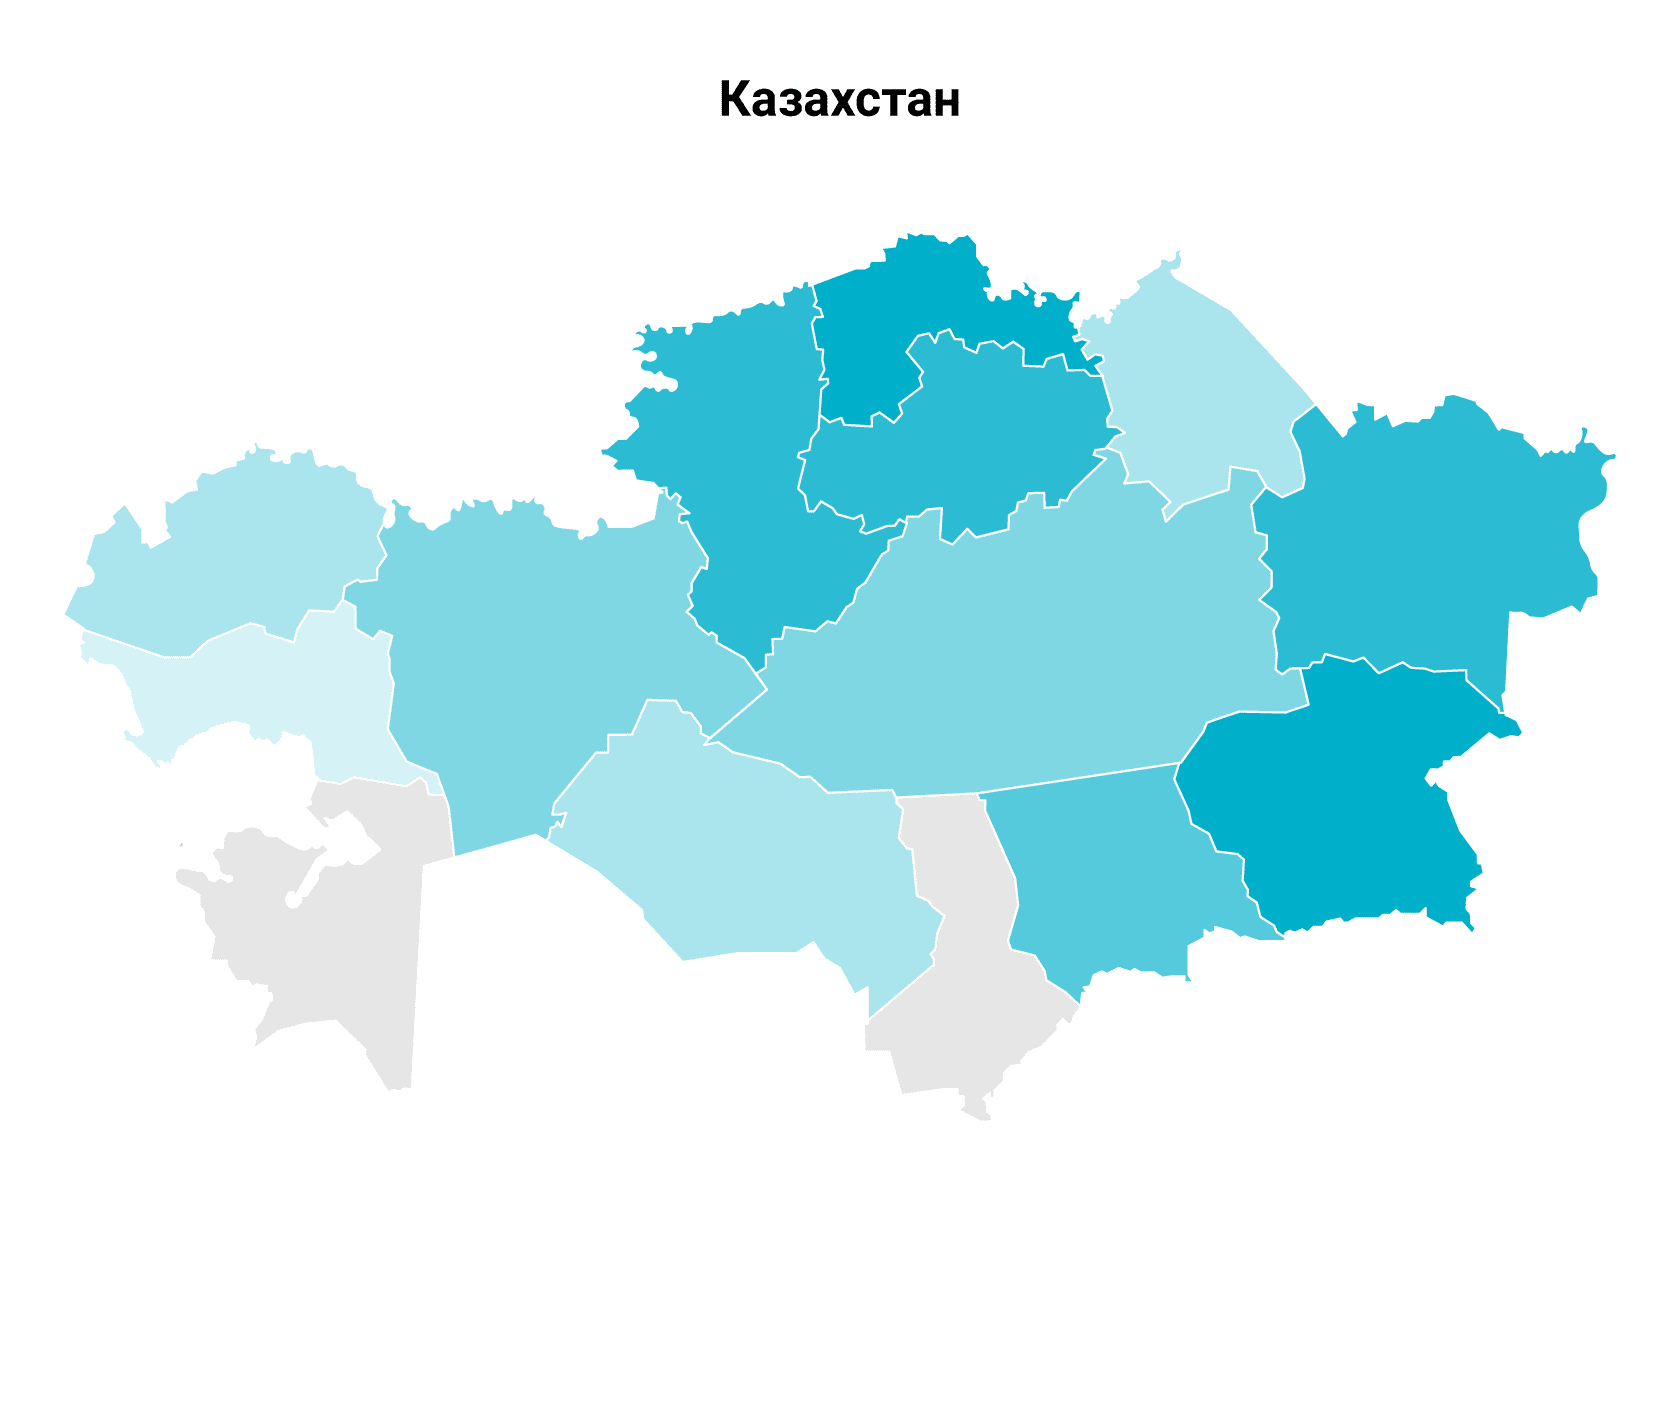 Растениеводство. Основные регионы производства. Казахстан